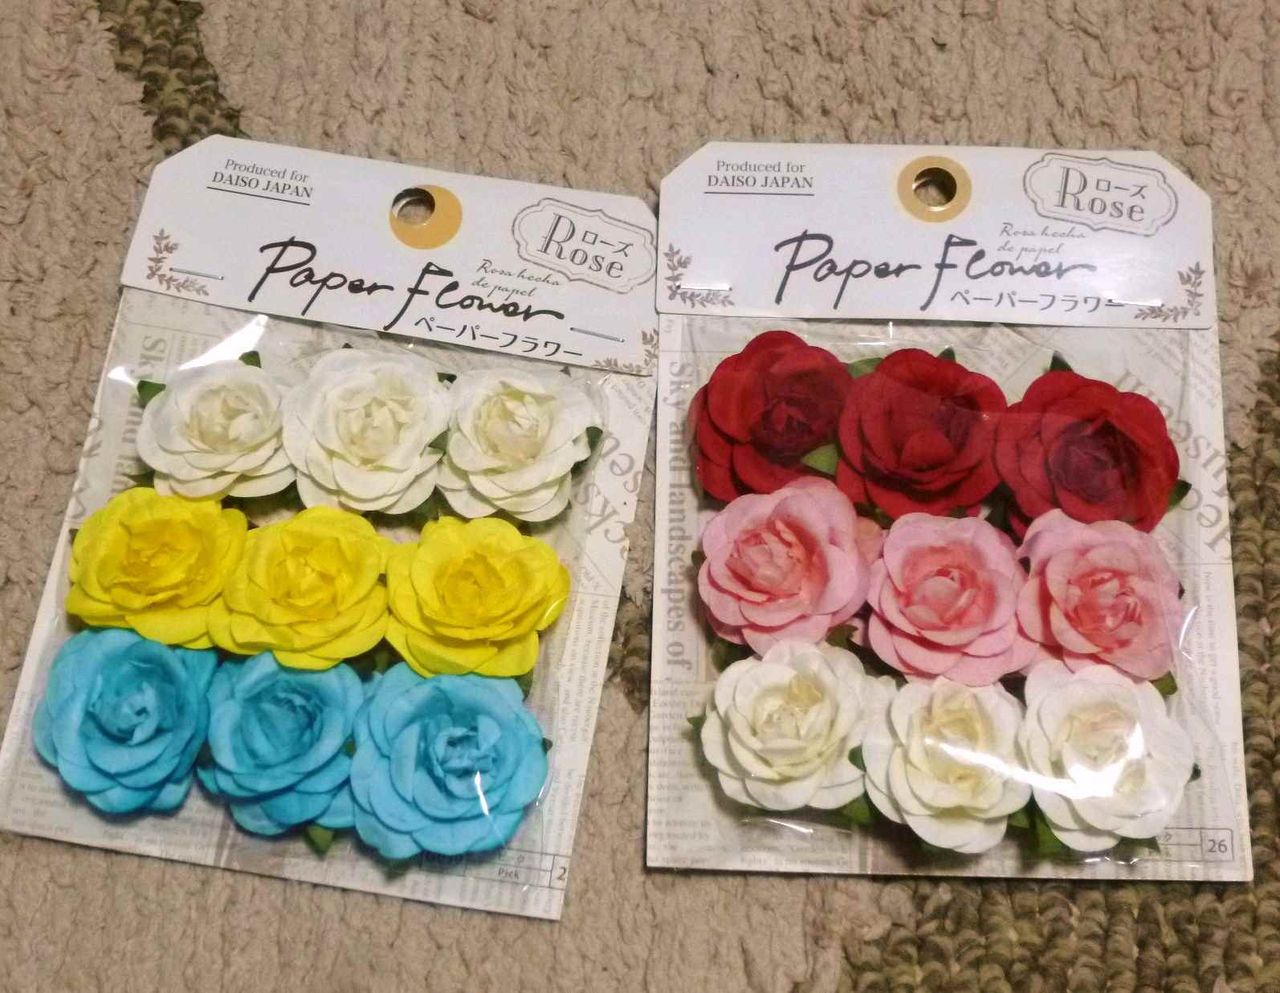 １００円リメイク ダイソーの紙製造花と 額縁でインテリアの飾りを作る 印象派画家の勘違い New